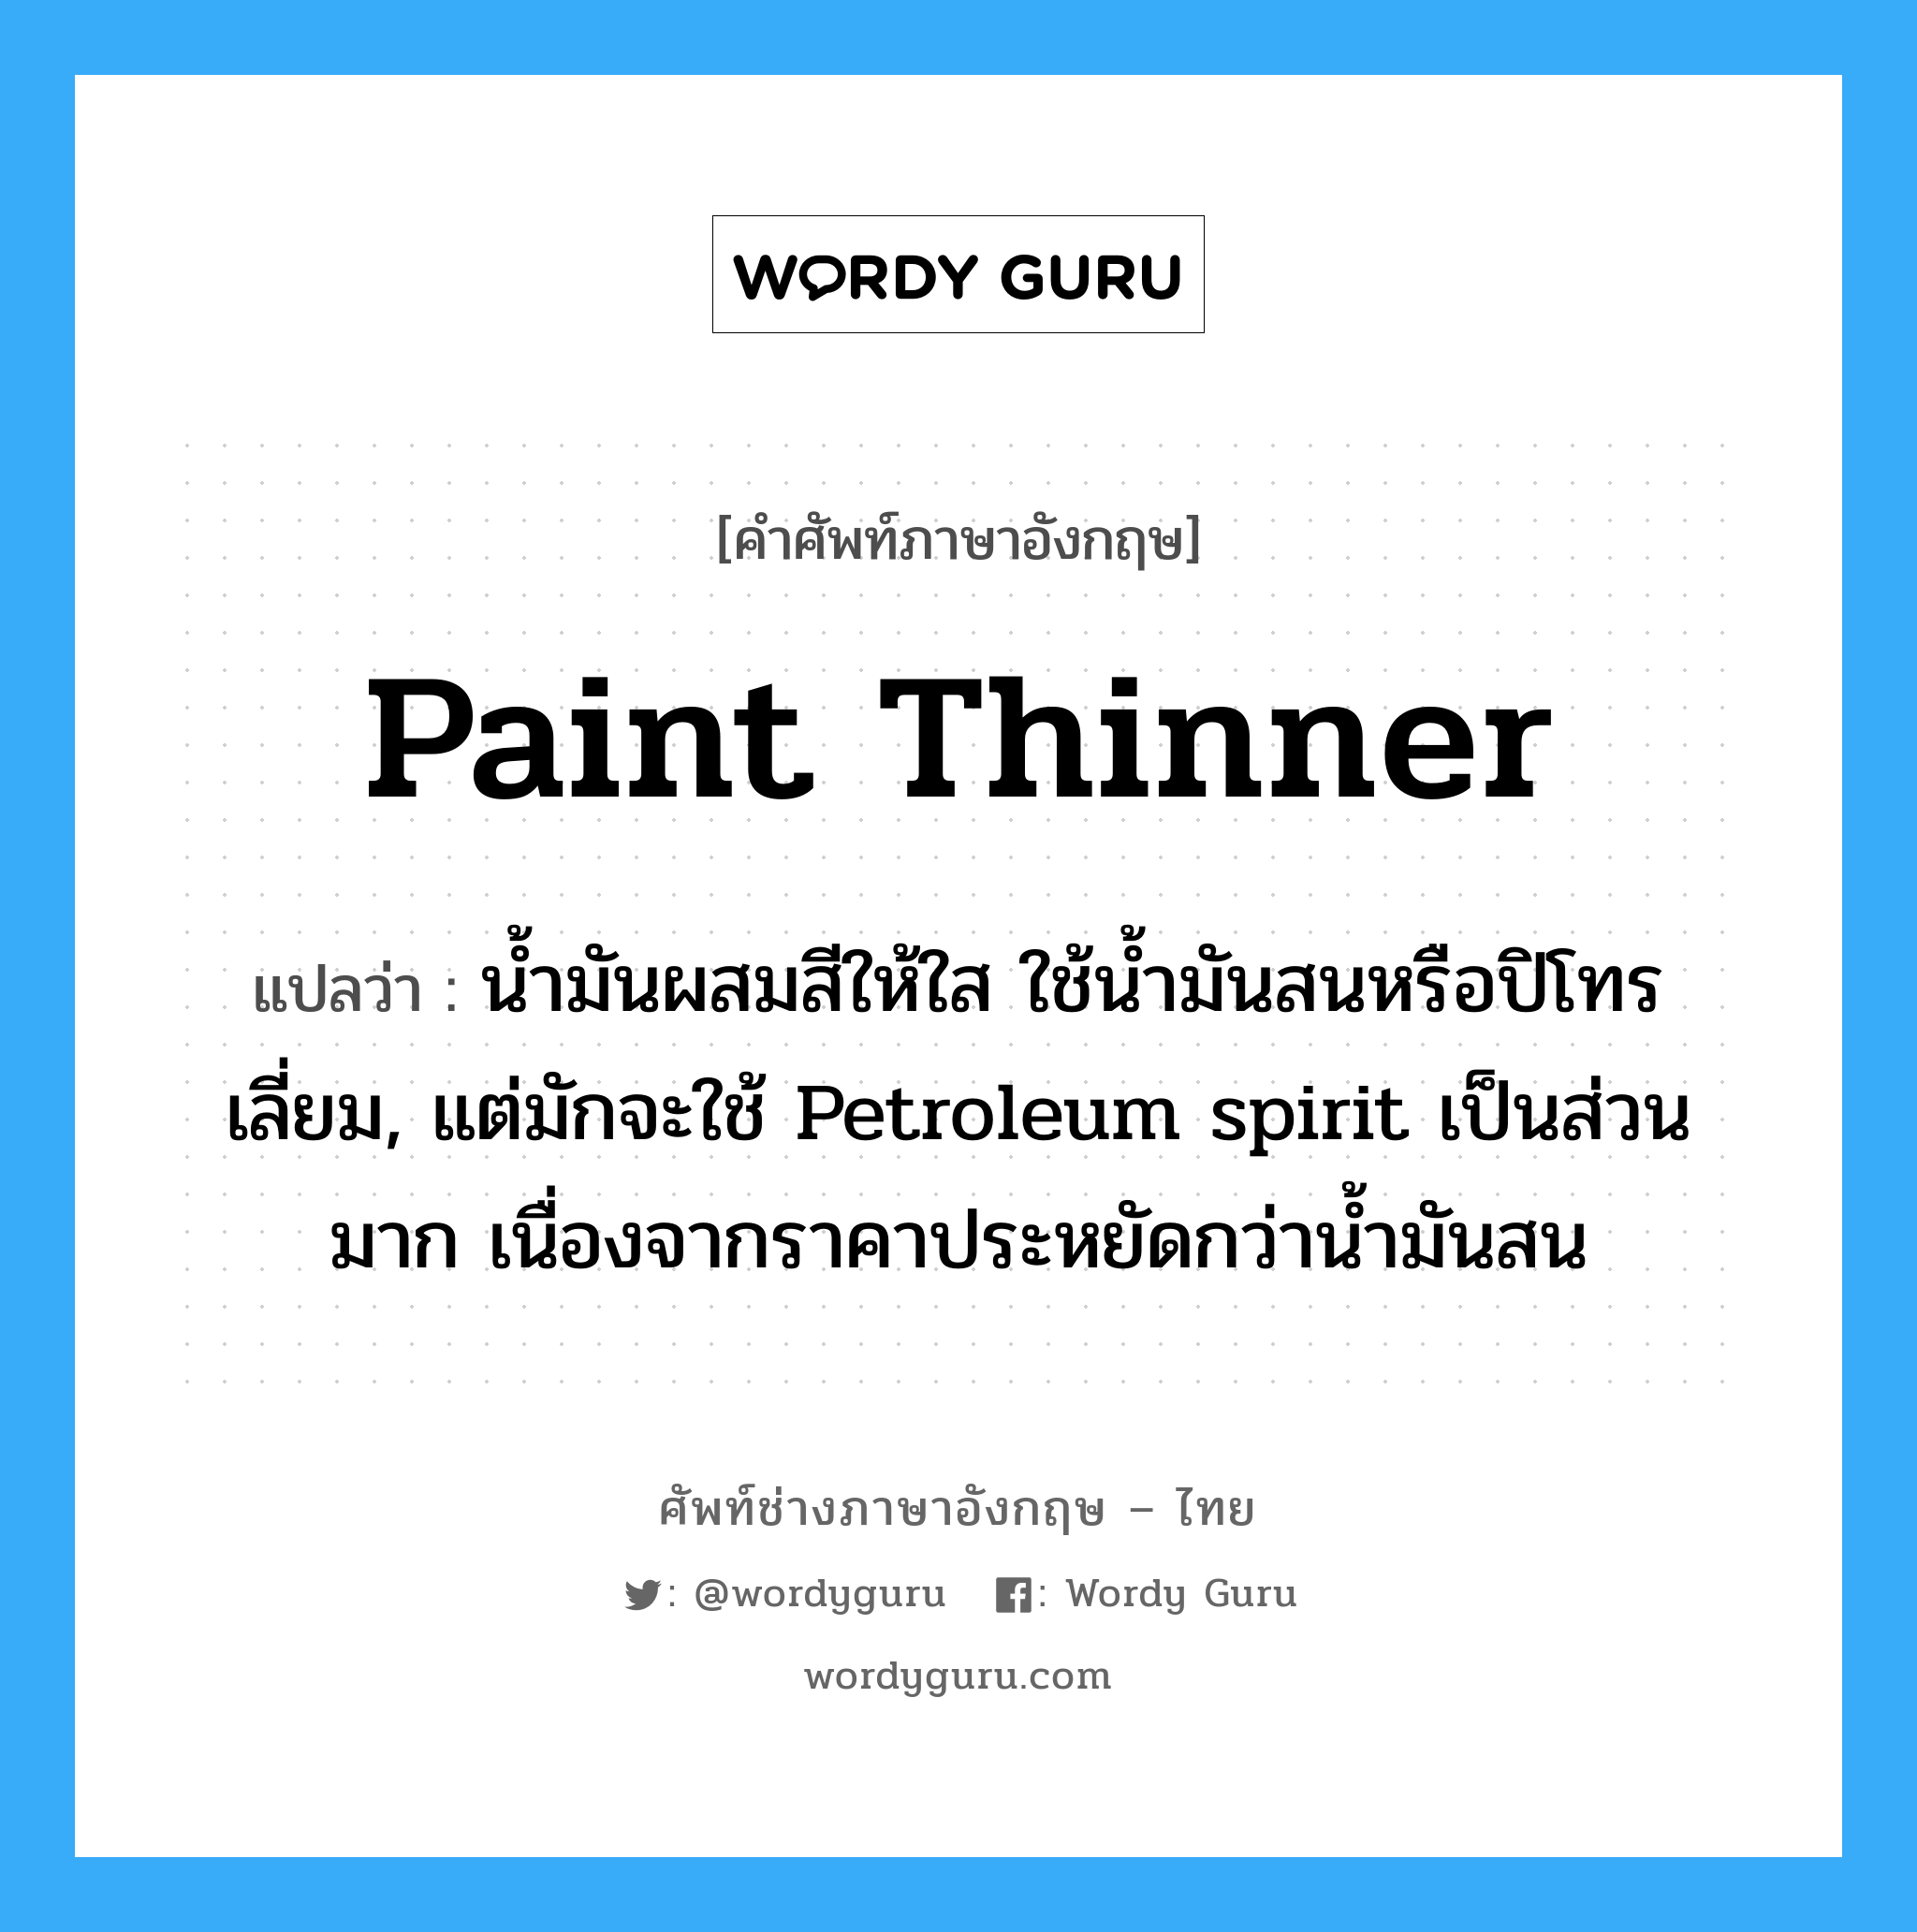 paint thinner แปลว่า?, คำศัพท์ช่างภาษาอังกฤษ - ไทย paint thinner คำศัพท์ภาษาอังกฤษ paint thinner แปลว่า น้ำมันผสมสีให้ใส ใช้น้ำมันสนหรือปิโทรเลี่ยม, แต่มักจะใช้ Petroleum spirit เป็นส่วนมาก เนื่องจากราคาประหยัดกว่าน้ำมันสน